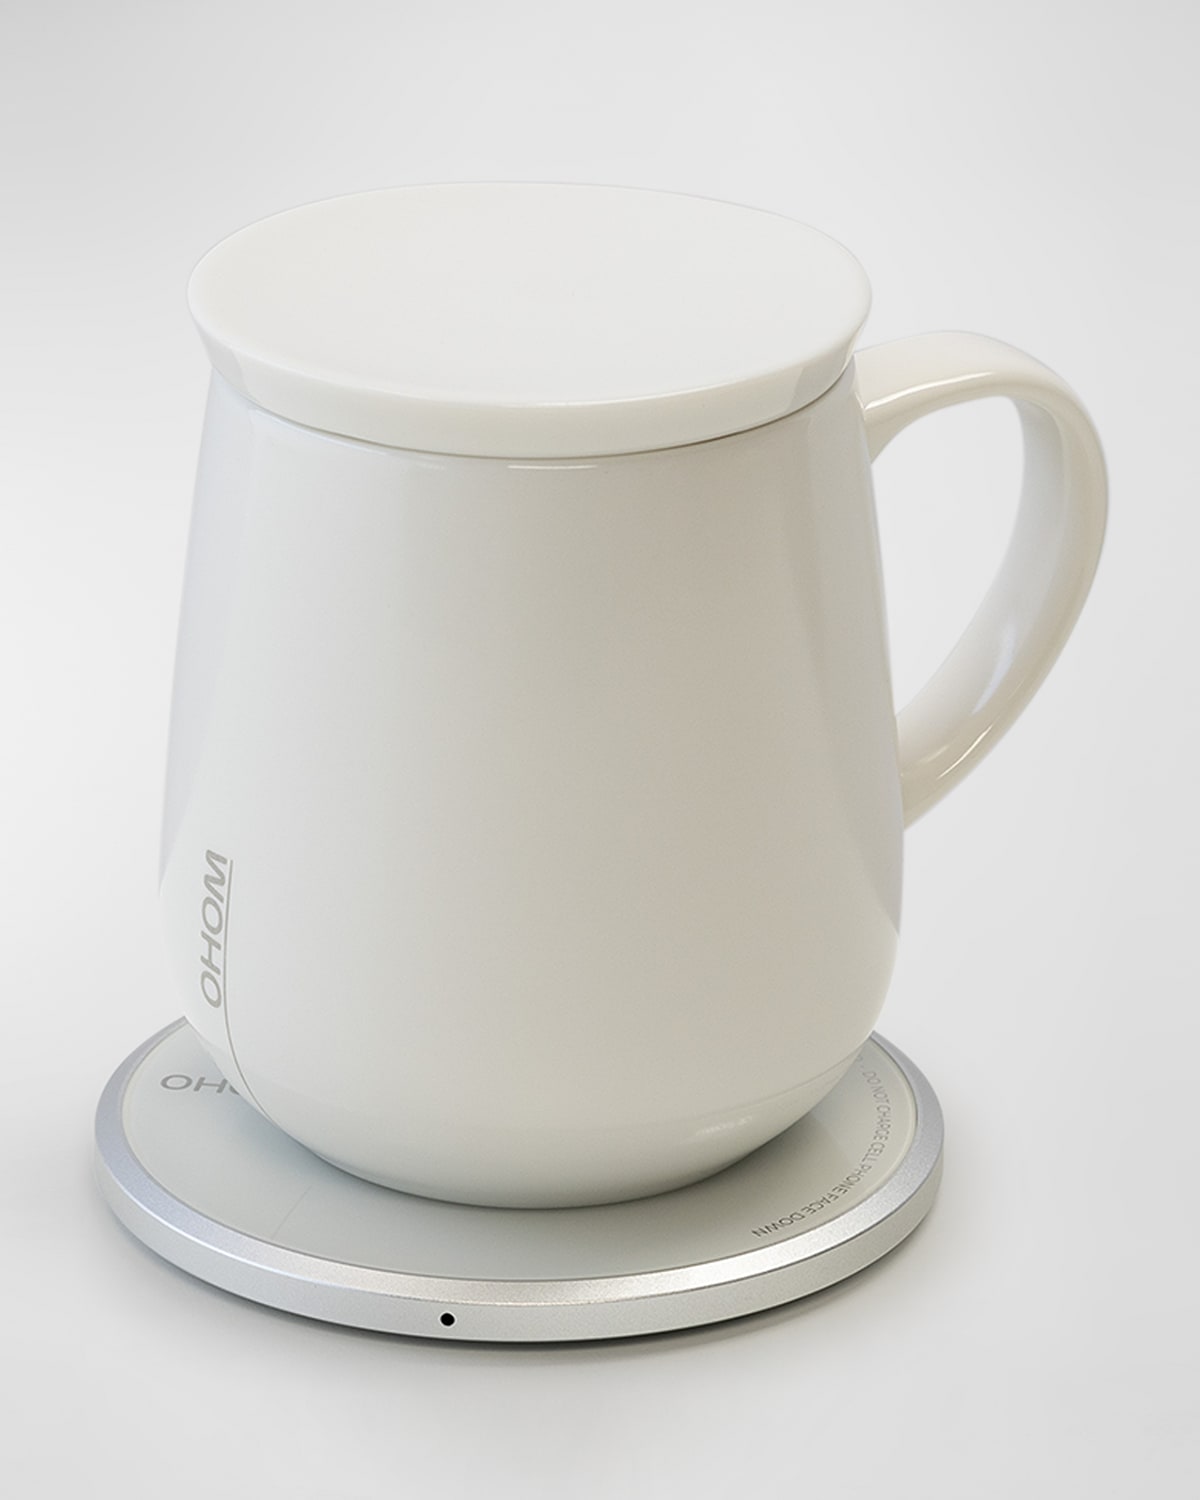 Ohom Ui Self-heating Mug, 12 Oz. In Neutral